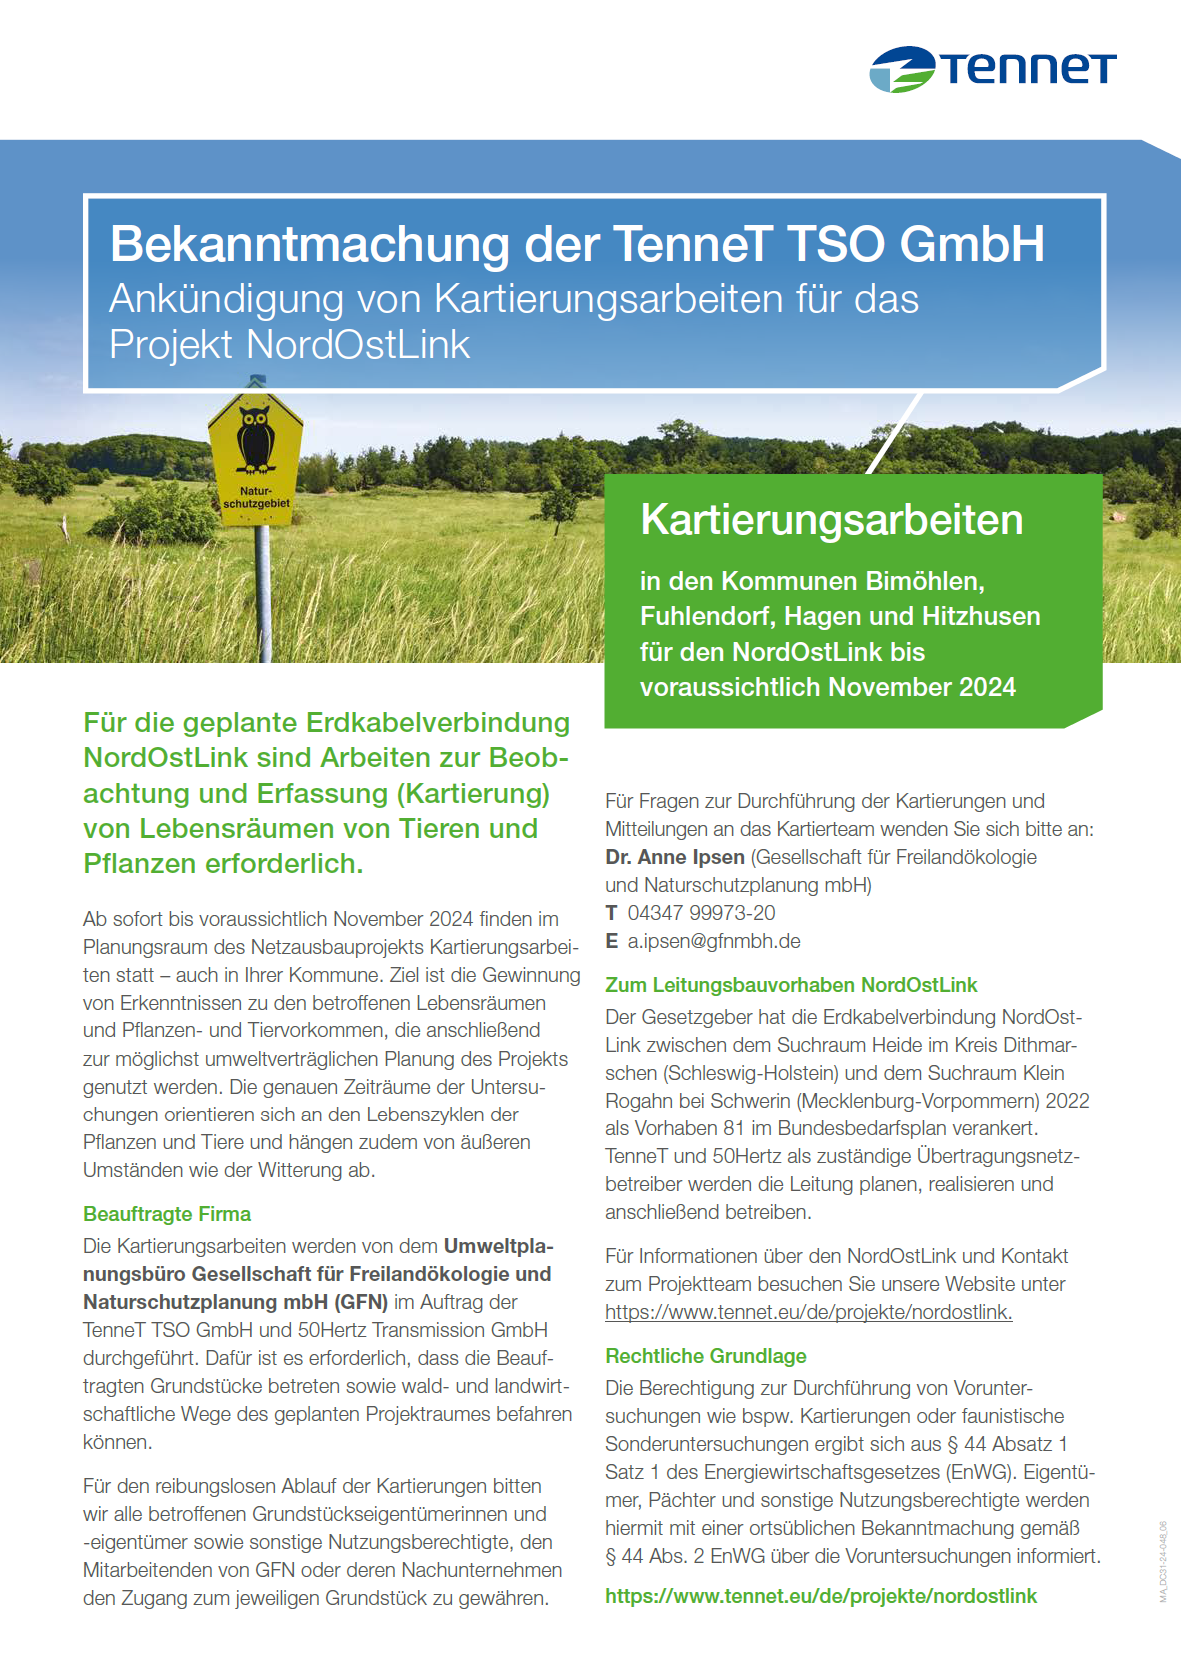 NordOstLink ortsübliche Bekanntmachung Kartierungen April November 2024 Amt Bad Bramstedt Land